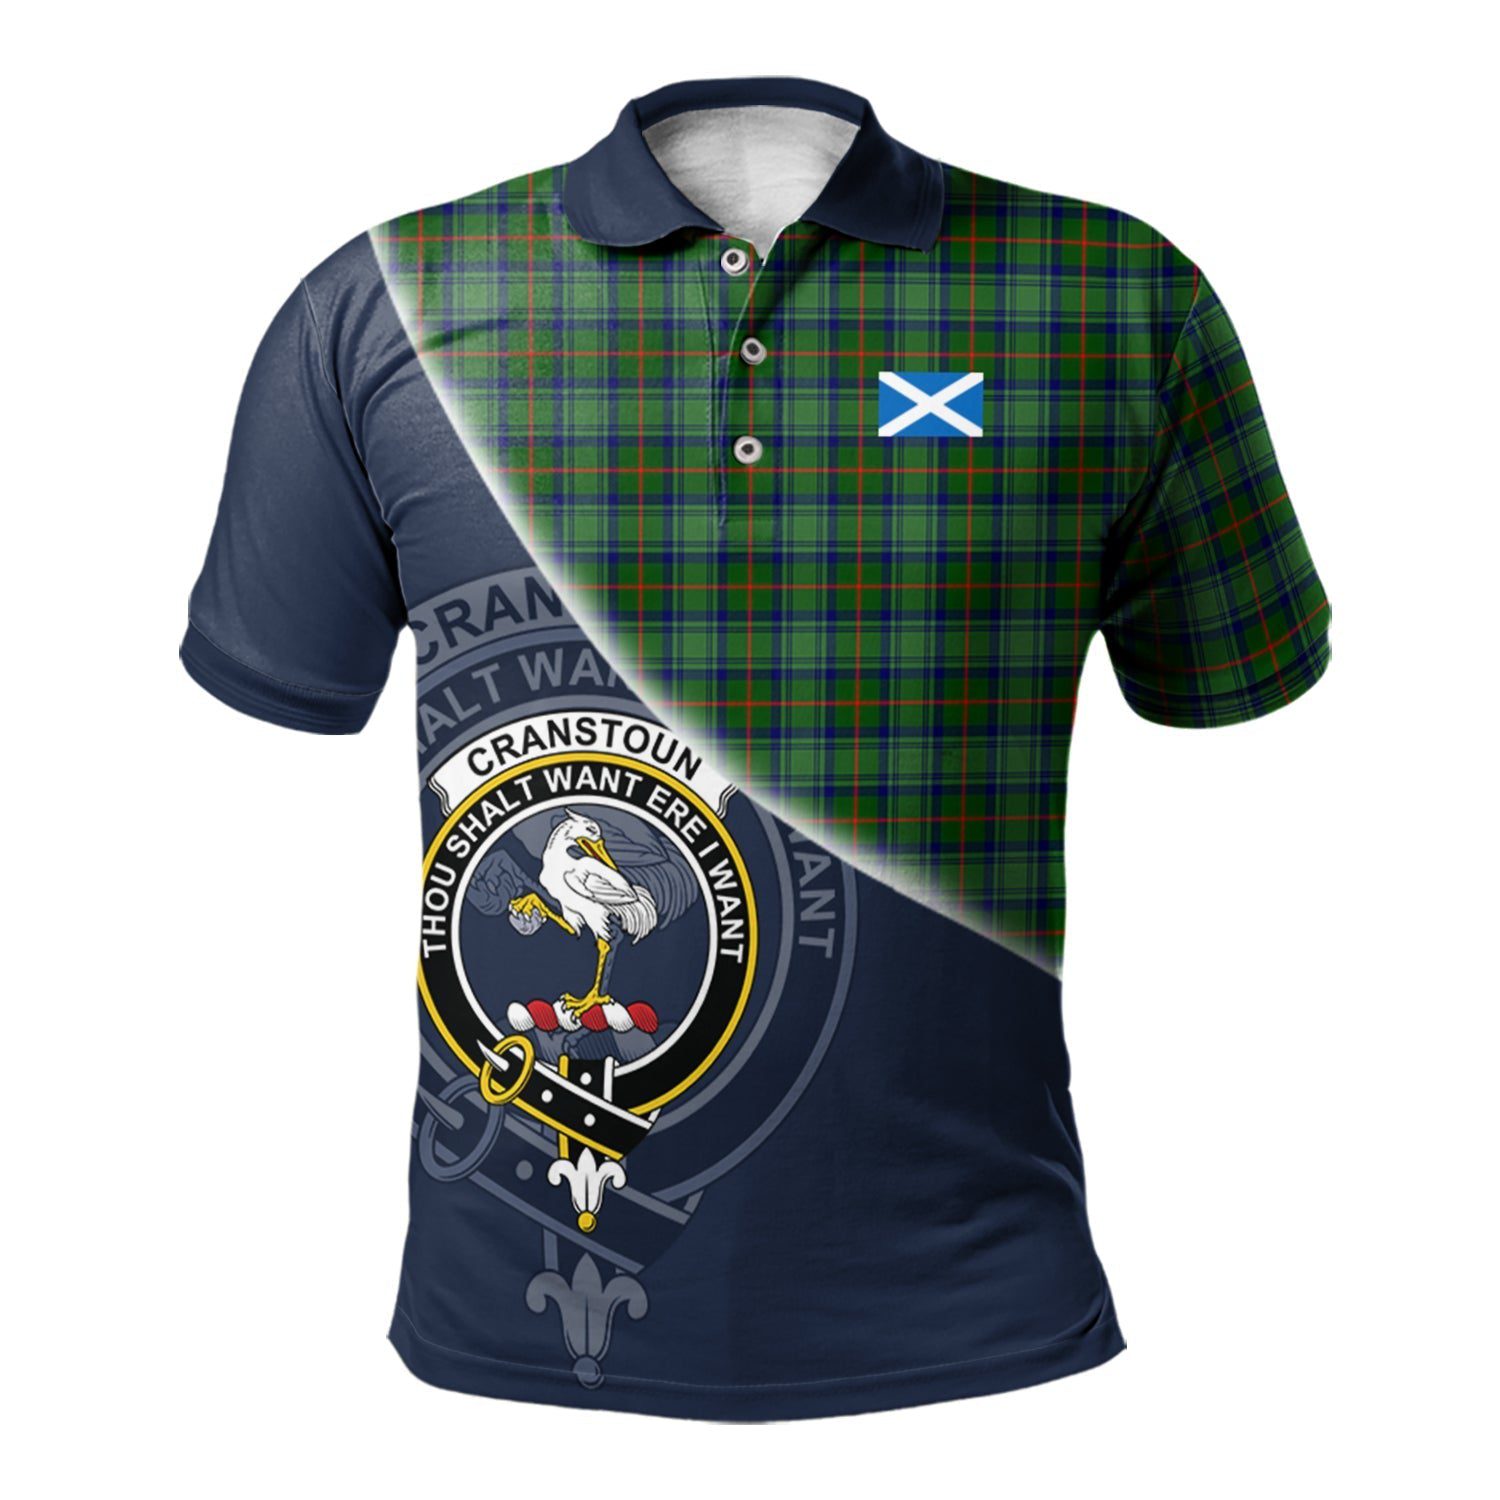 Cranstoun Clan Scotland Golf Polo, Tartan Mens Polo Shirts with Scottish Flag Half Style K23